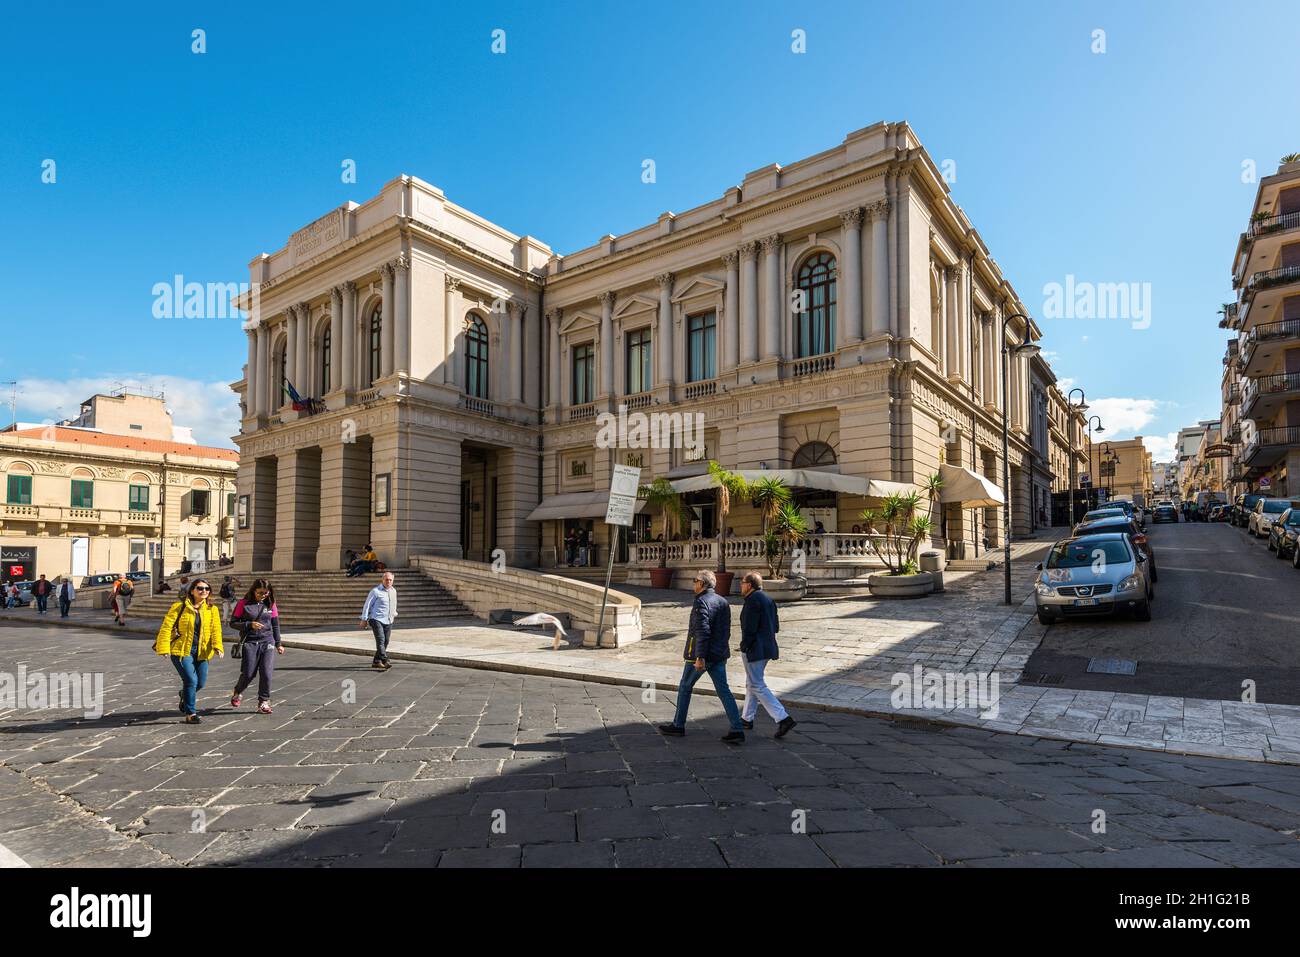 Reggio Calabria, Italy - October 30, 2017: The Francesco Cilea Theater (Teatro Francesco Cilea di Reggio Calabria) is an opera house in Reggio Calabri Stock Photo